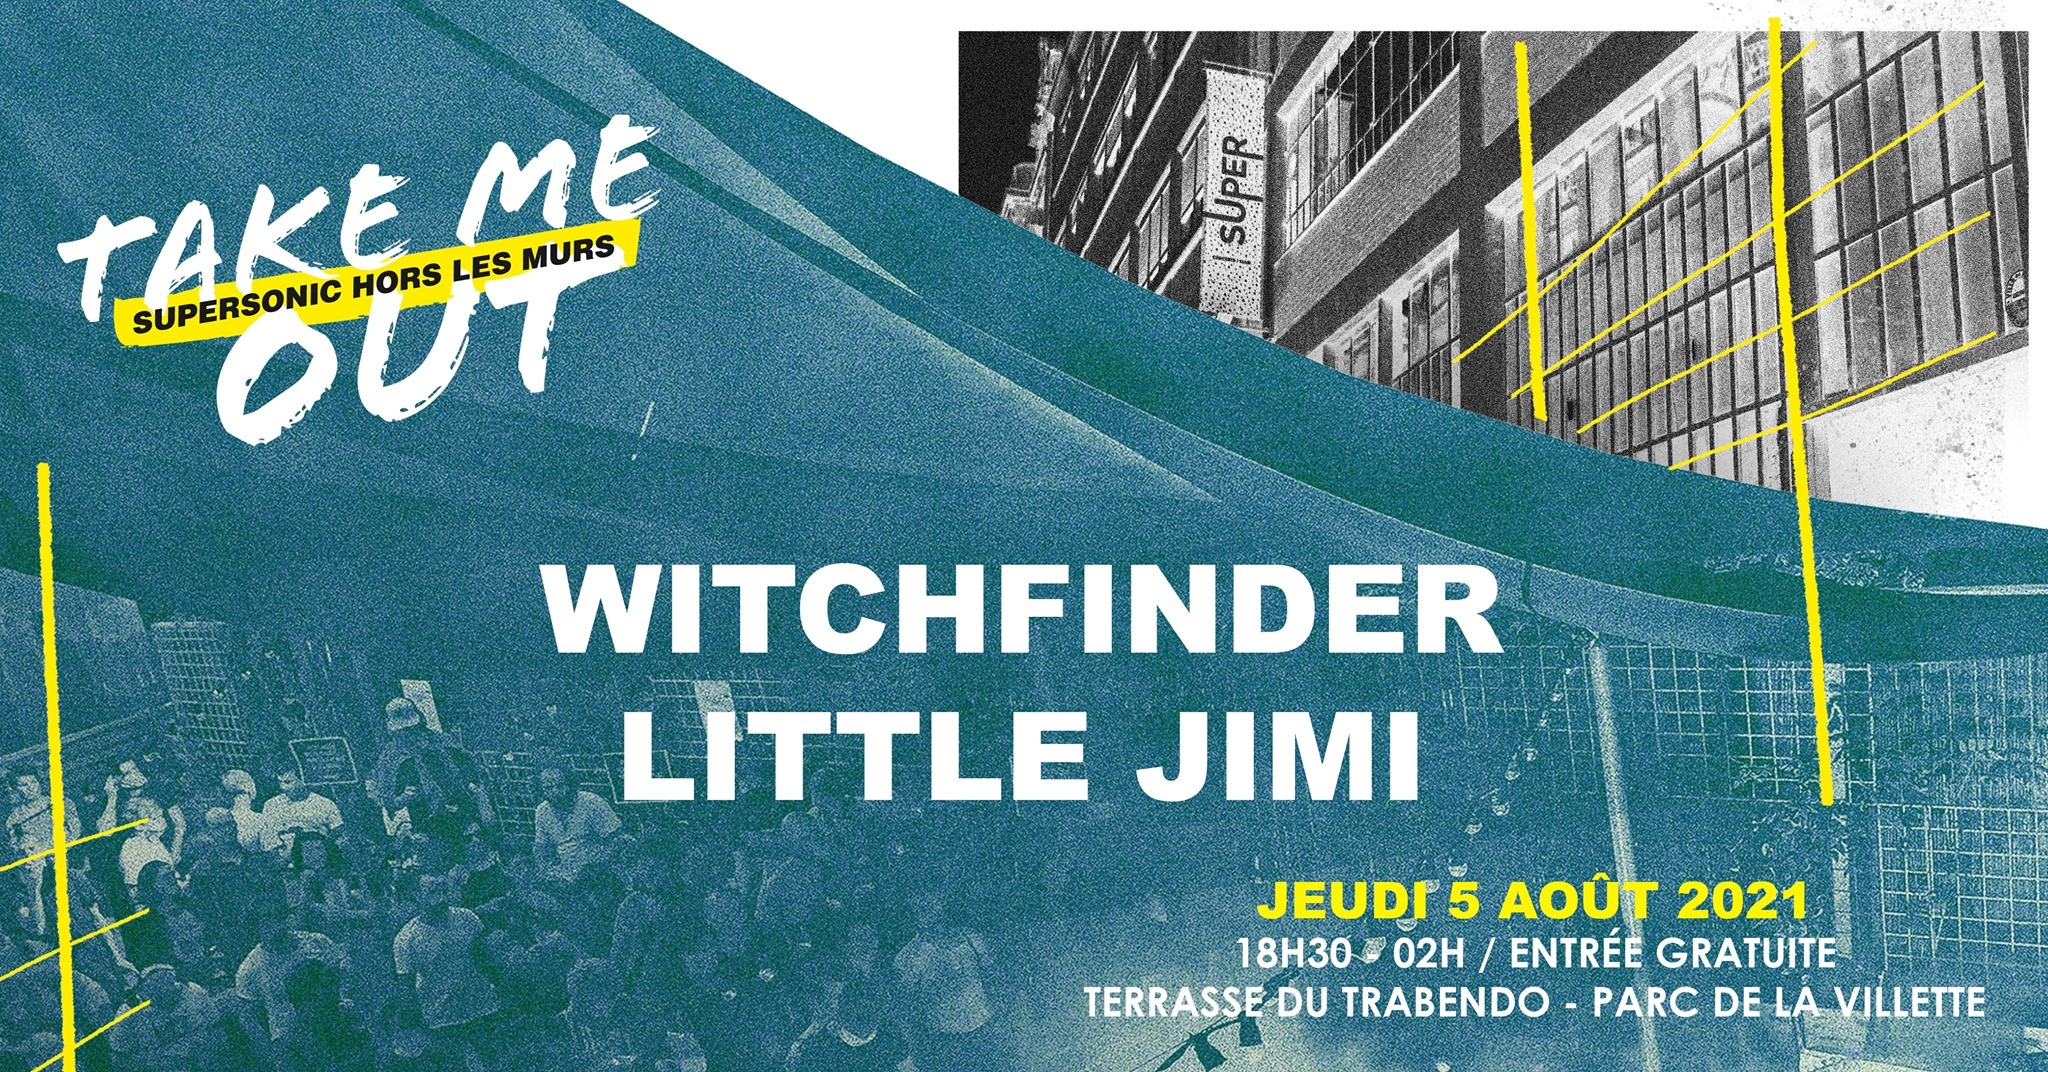 Take me Out (Supersonic) : Witchfinder + Little Jimi @ Terrasse du Trabendo (Paris) le 5 Aout 2021